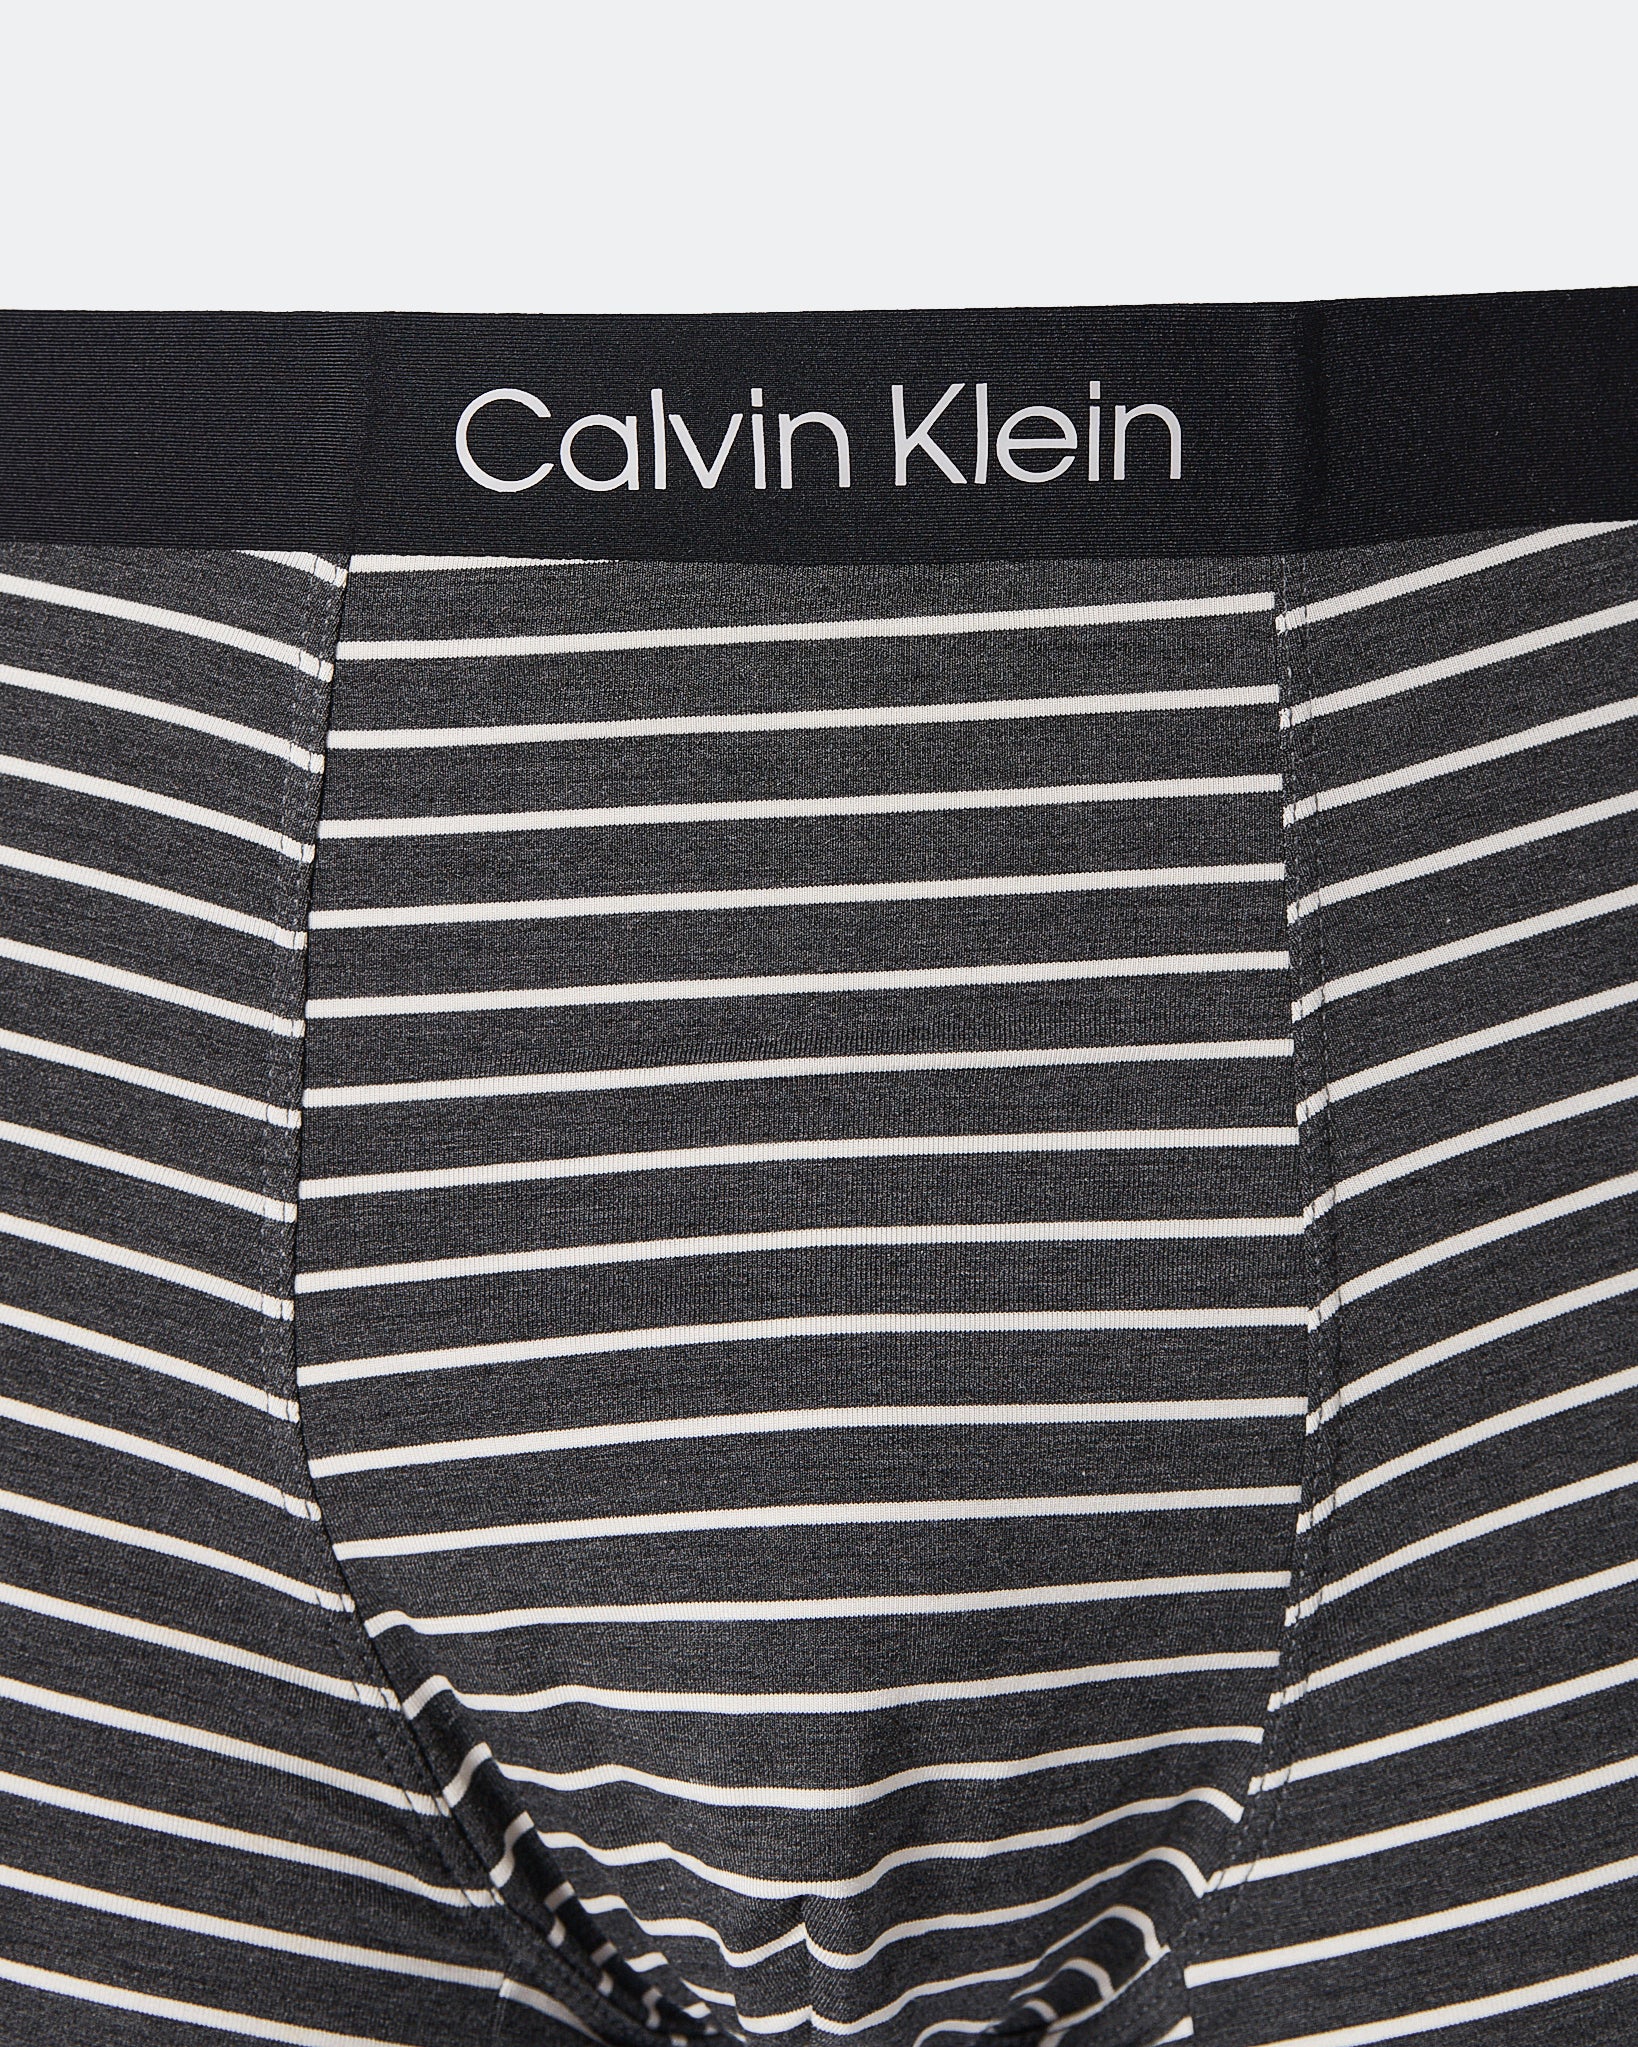 CK Striped Over Printed Men Black  Underwear 6.90